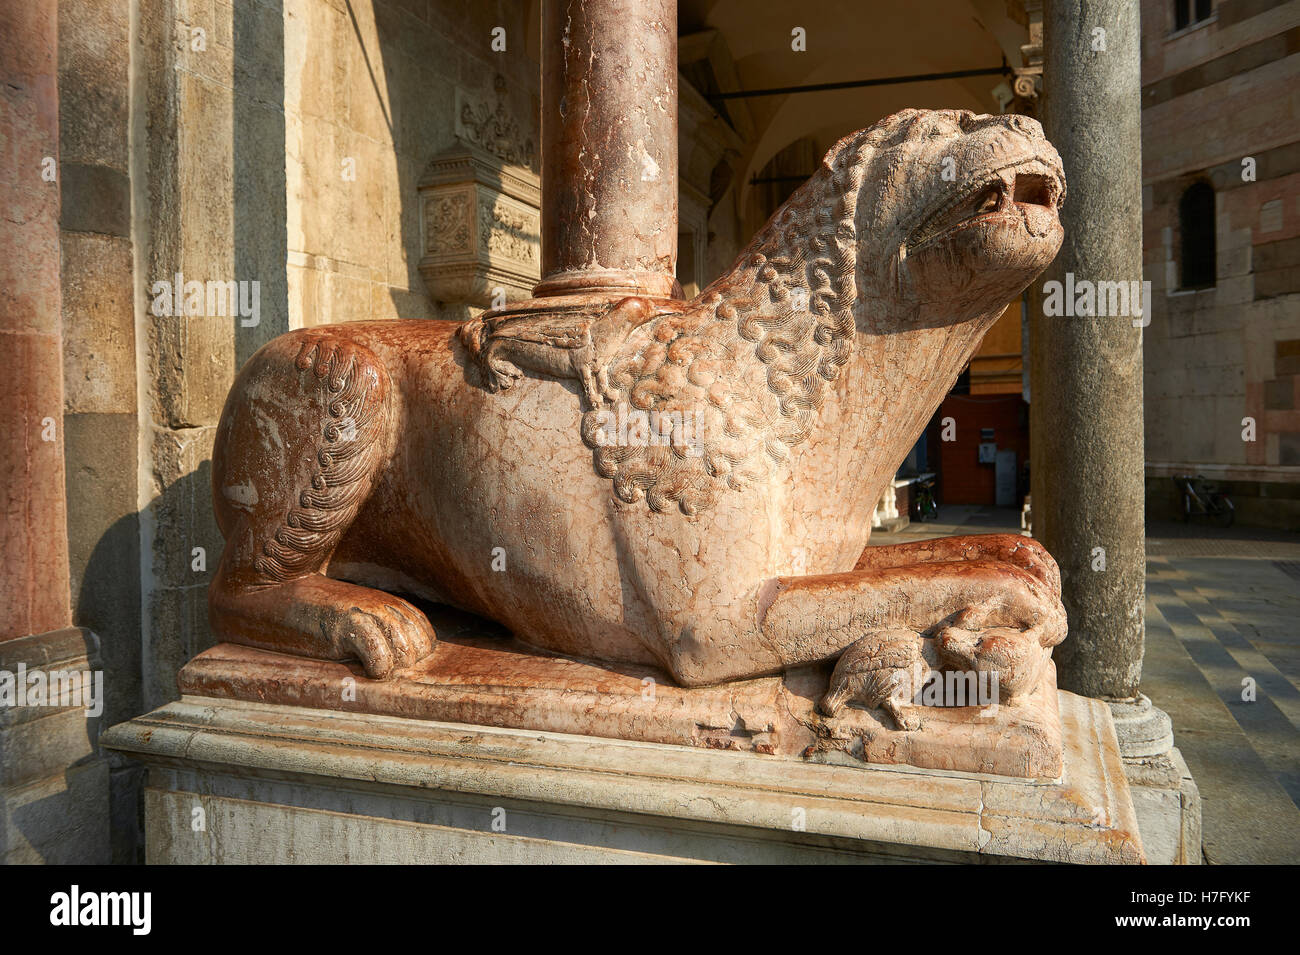 La sculpture romane Lion colonnes de soutien de la crémone Duomo baptistère, commencé 1107, Cremona, Lombardie, Italie du nord Banque D'Images